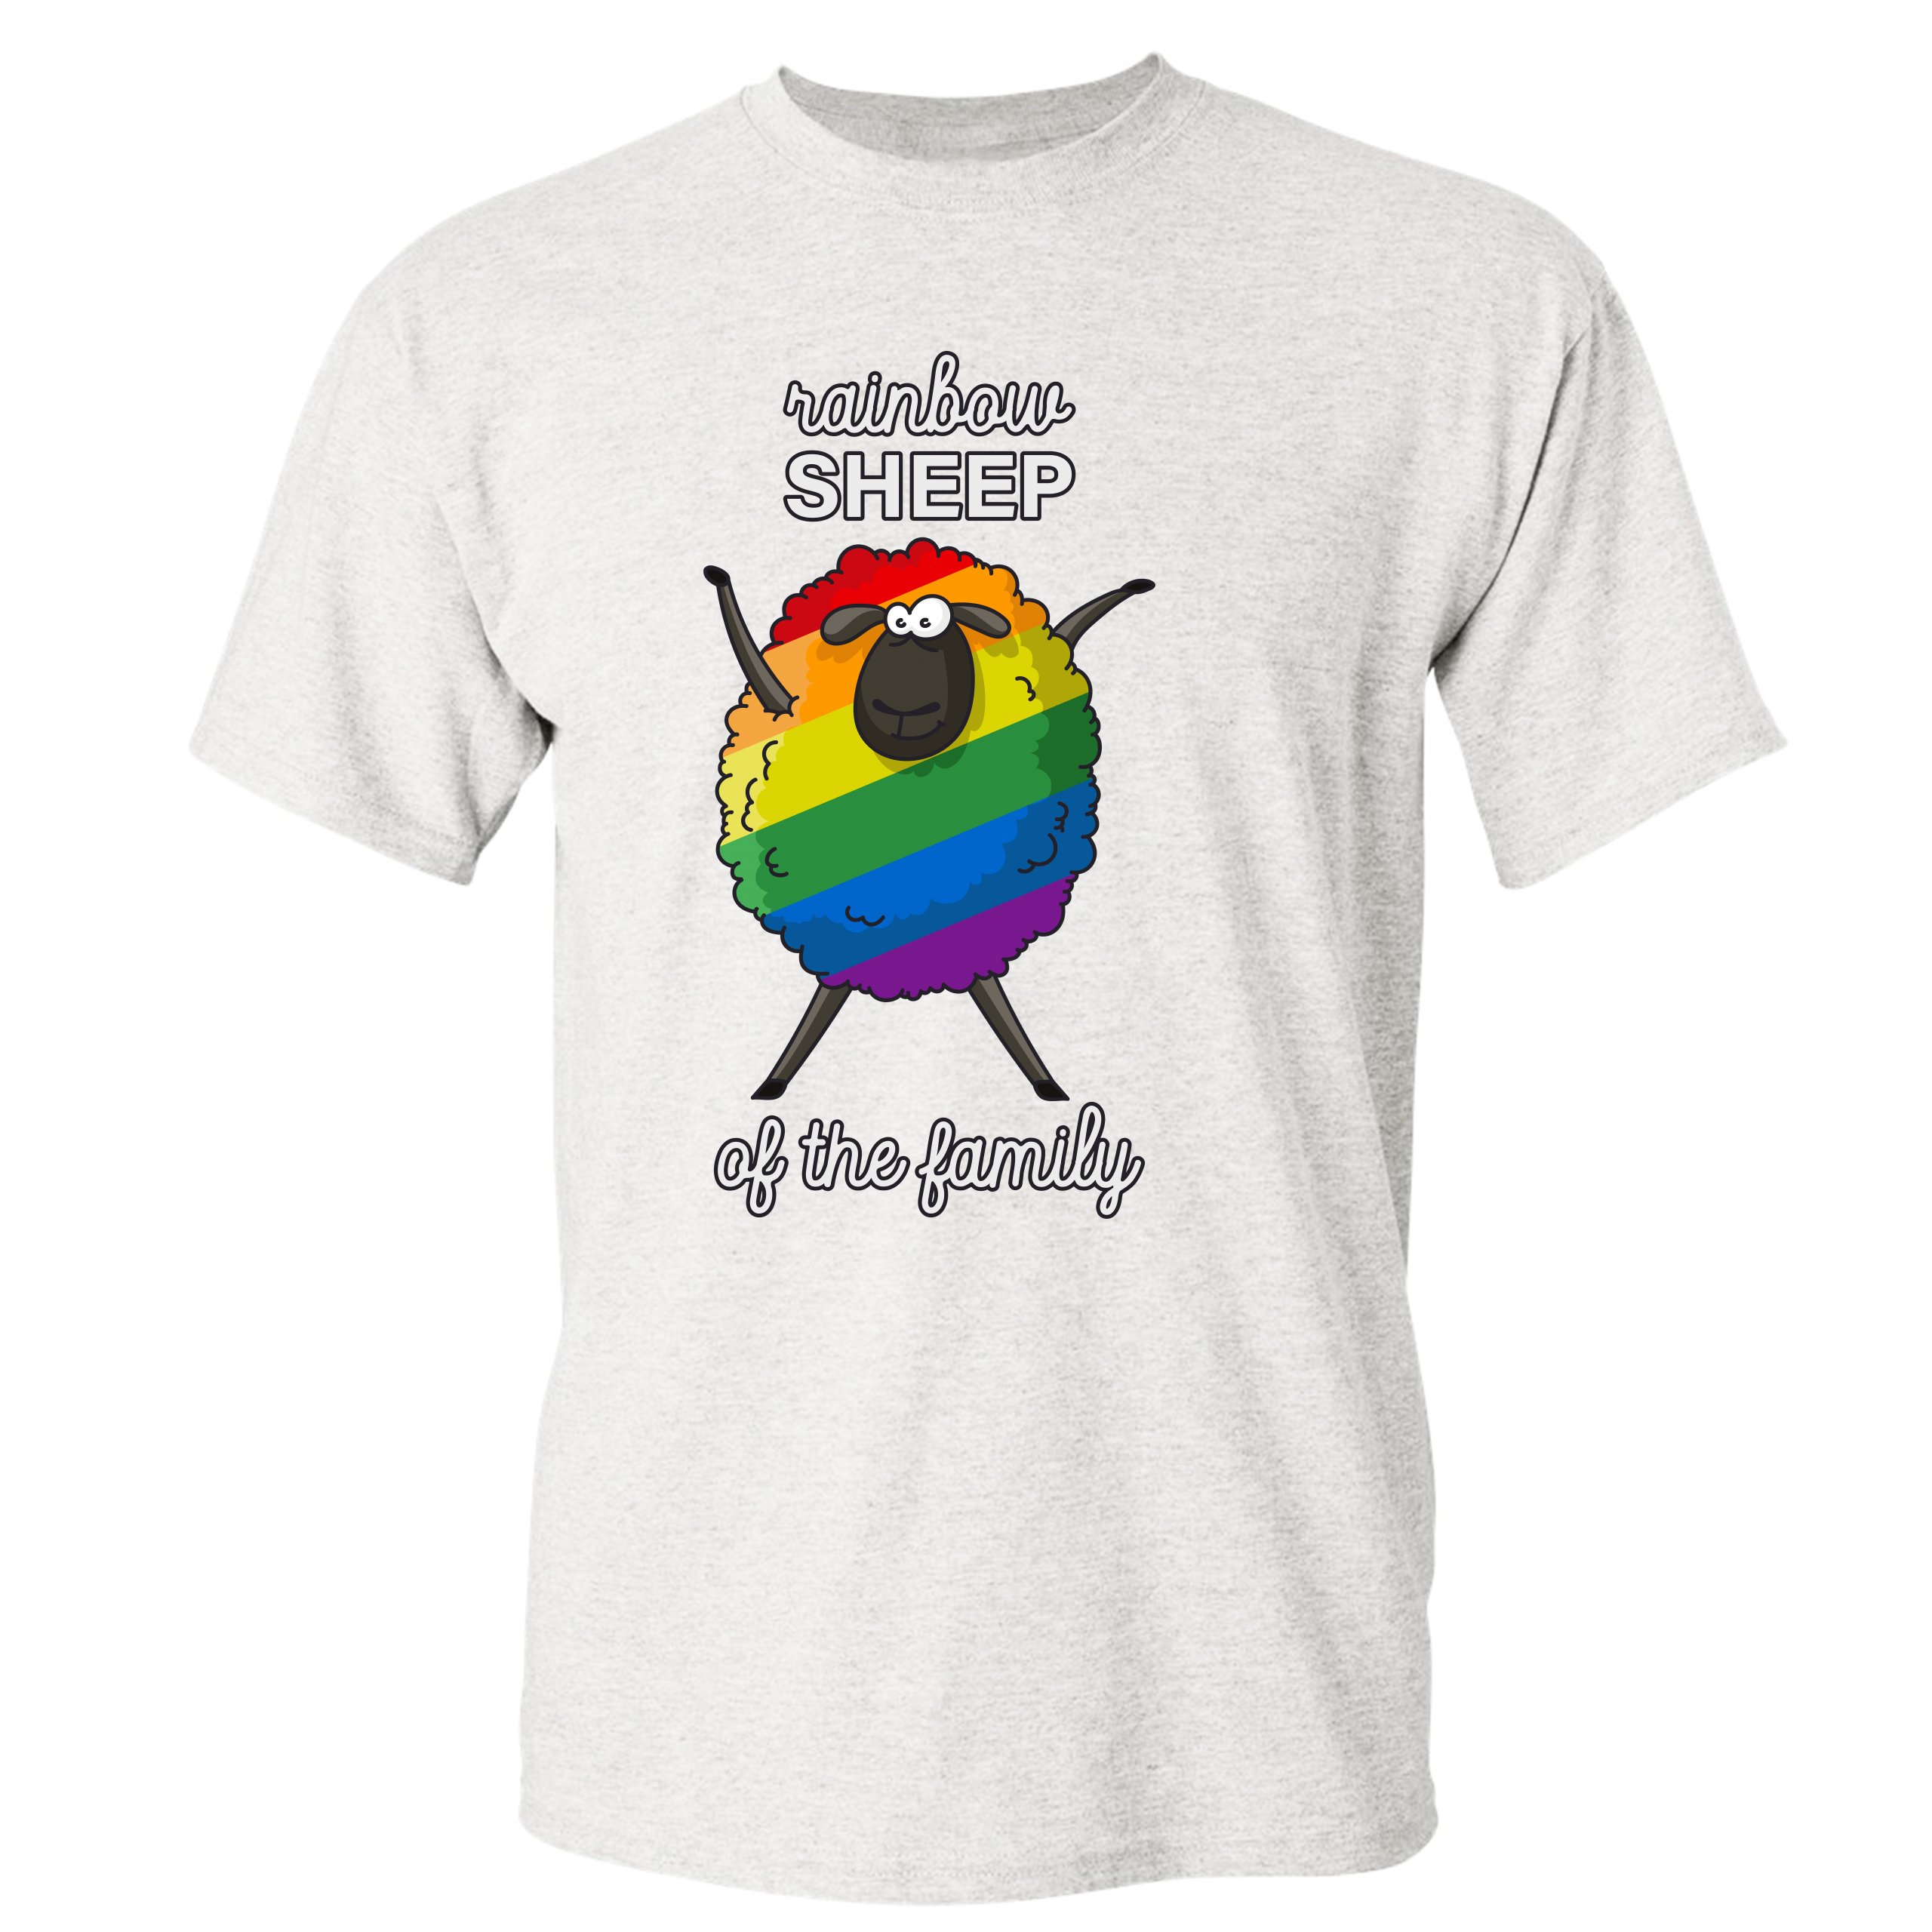 Pride Festival T-Shirt LGBTQ T-Shirt Rainbow Sheep T-Shirt Pride T-Shirt Equality T-Shirt Gay Pride T-Shirt